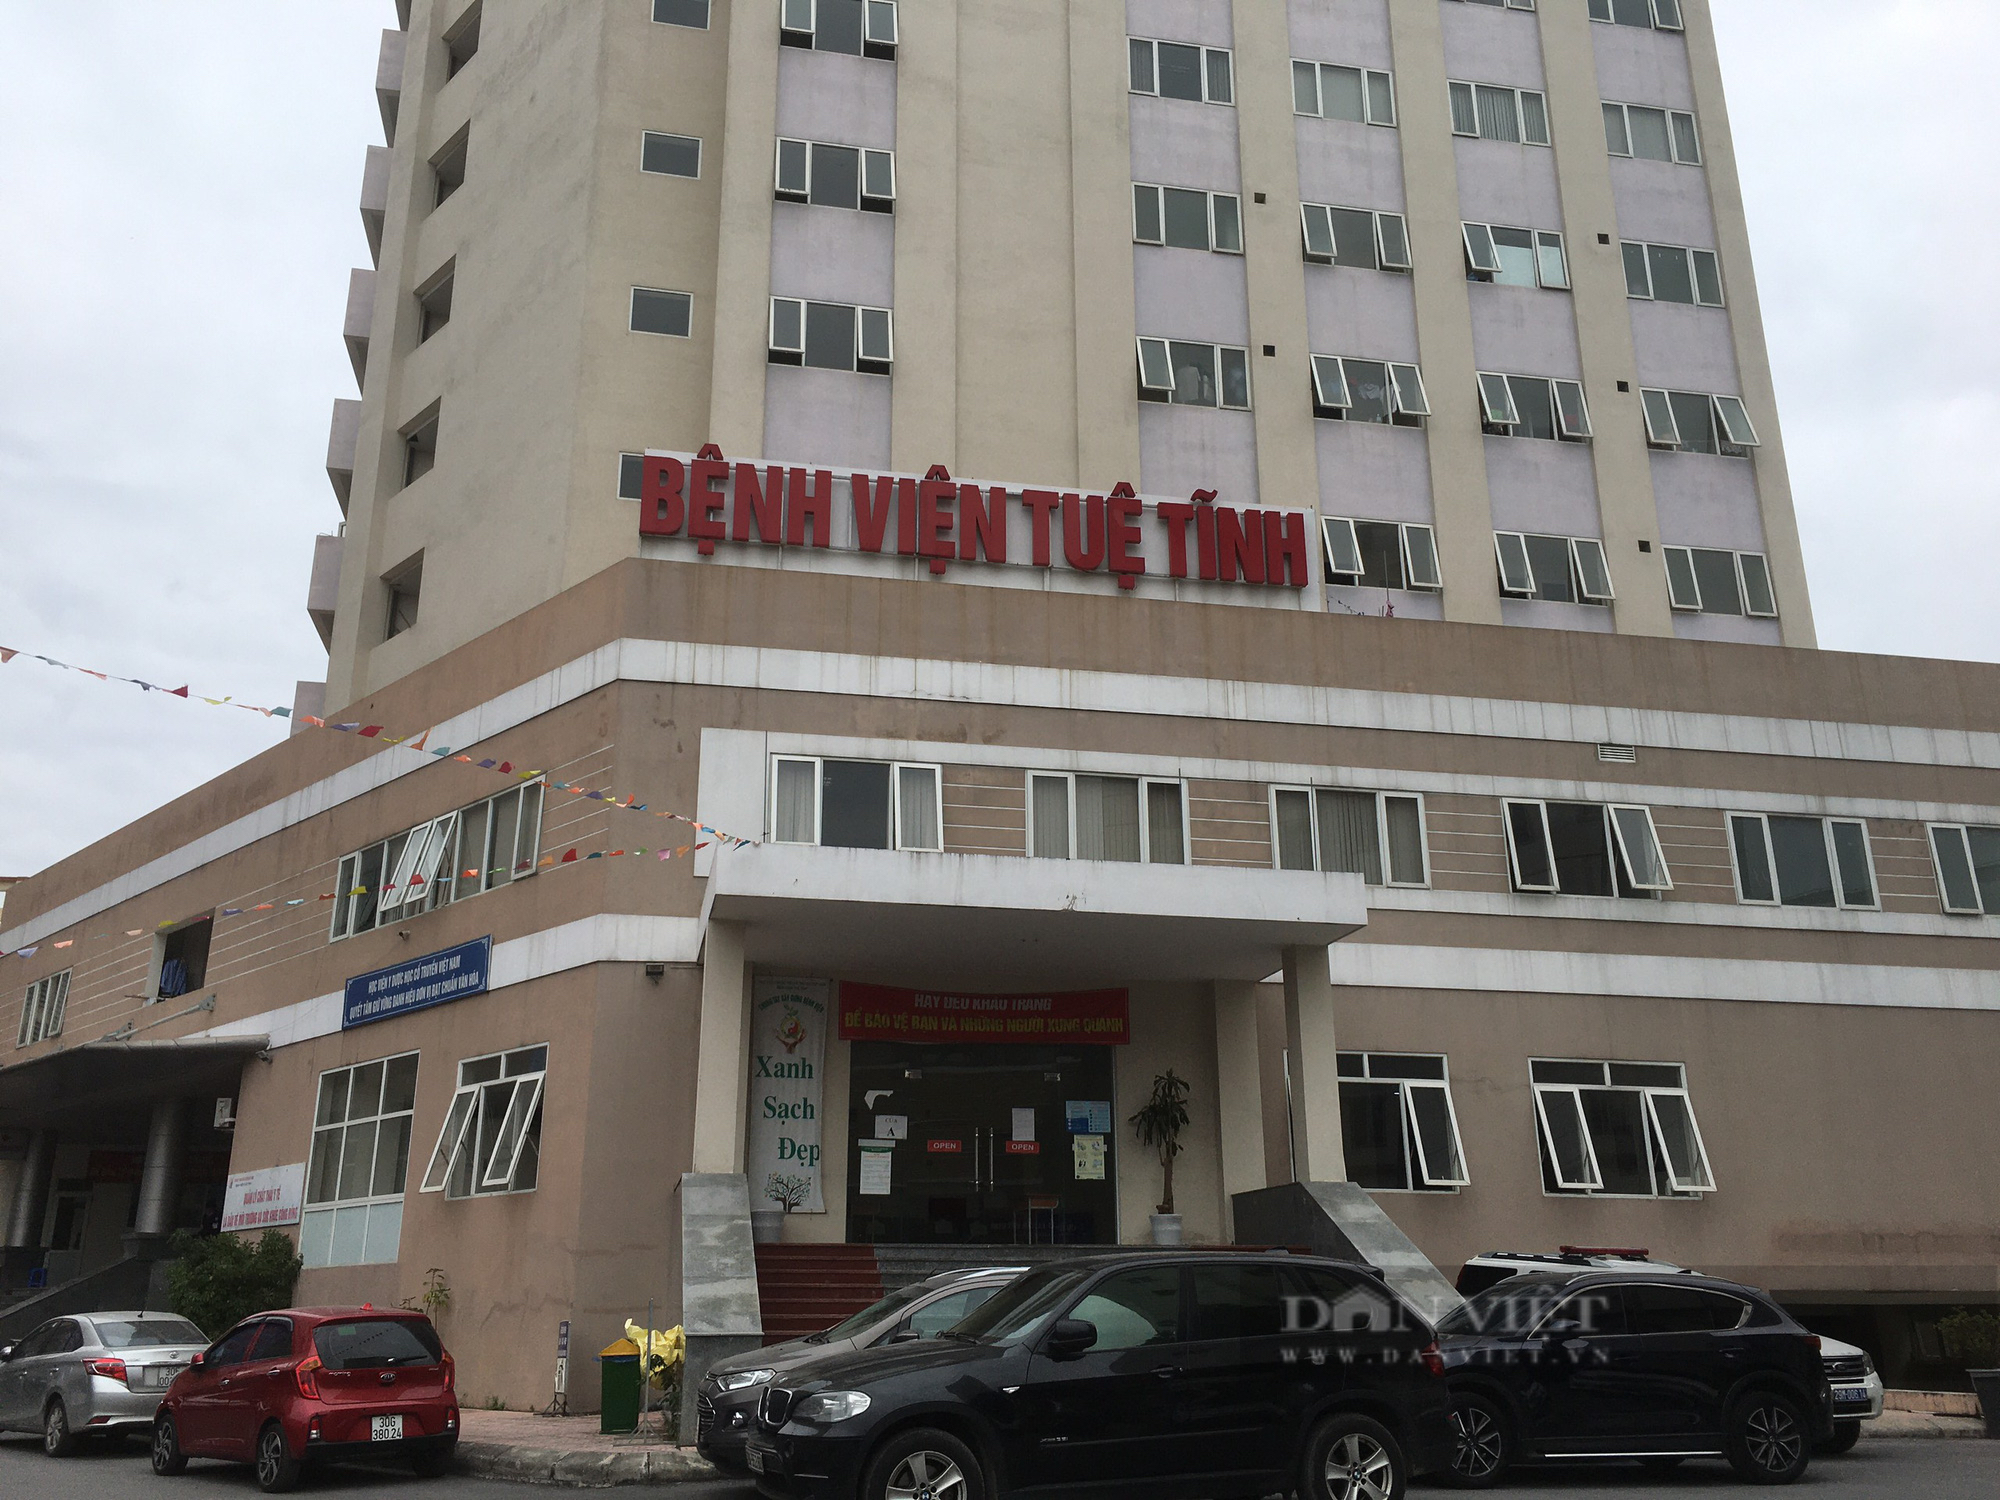 160 cán bộ y tế tại Bệnh viện Tuệ Tĩnh bị nợ lương: Đề xuất tạm dừng tự chủ - Ảnh 3.